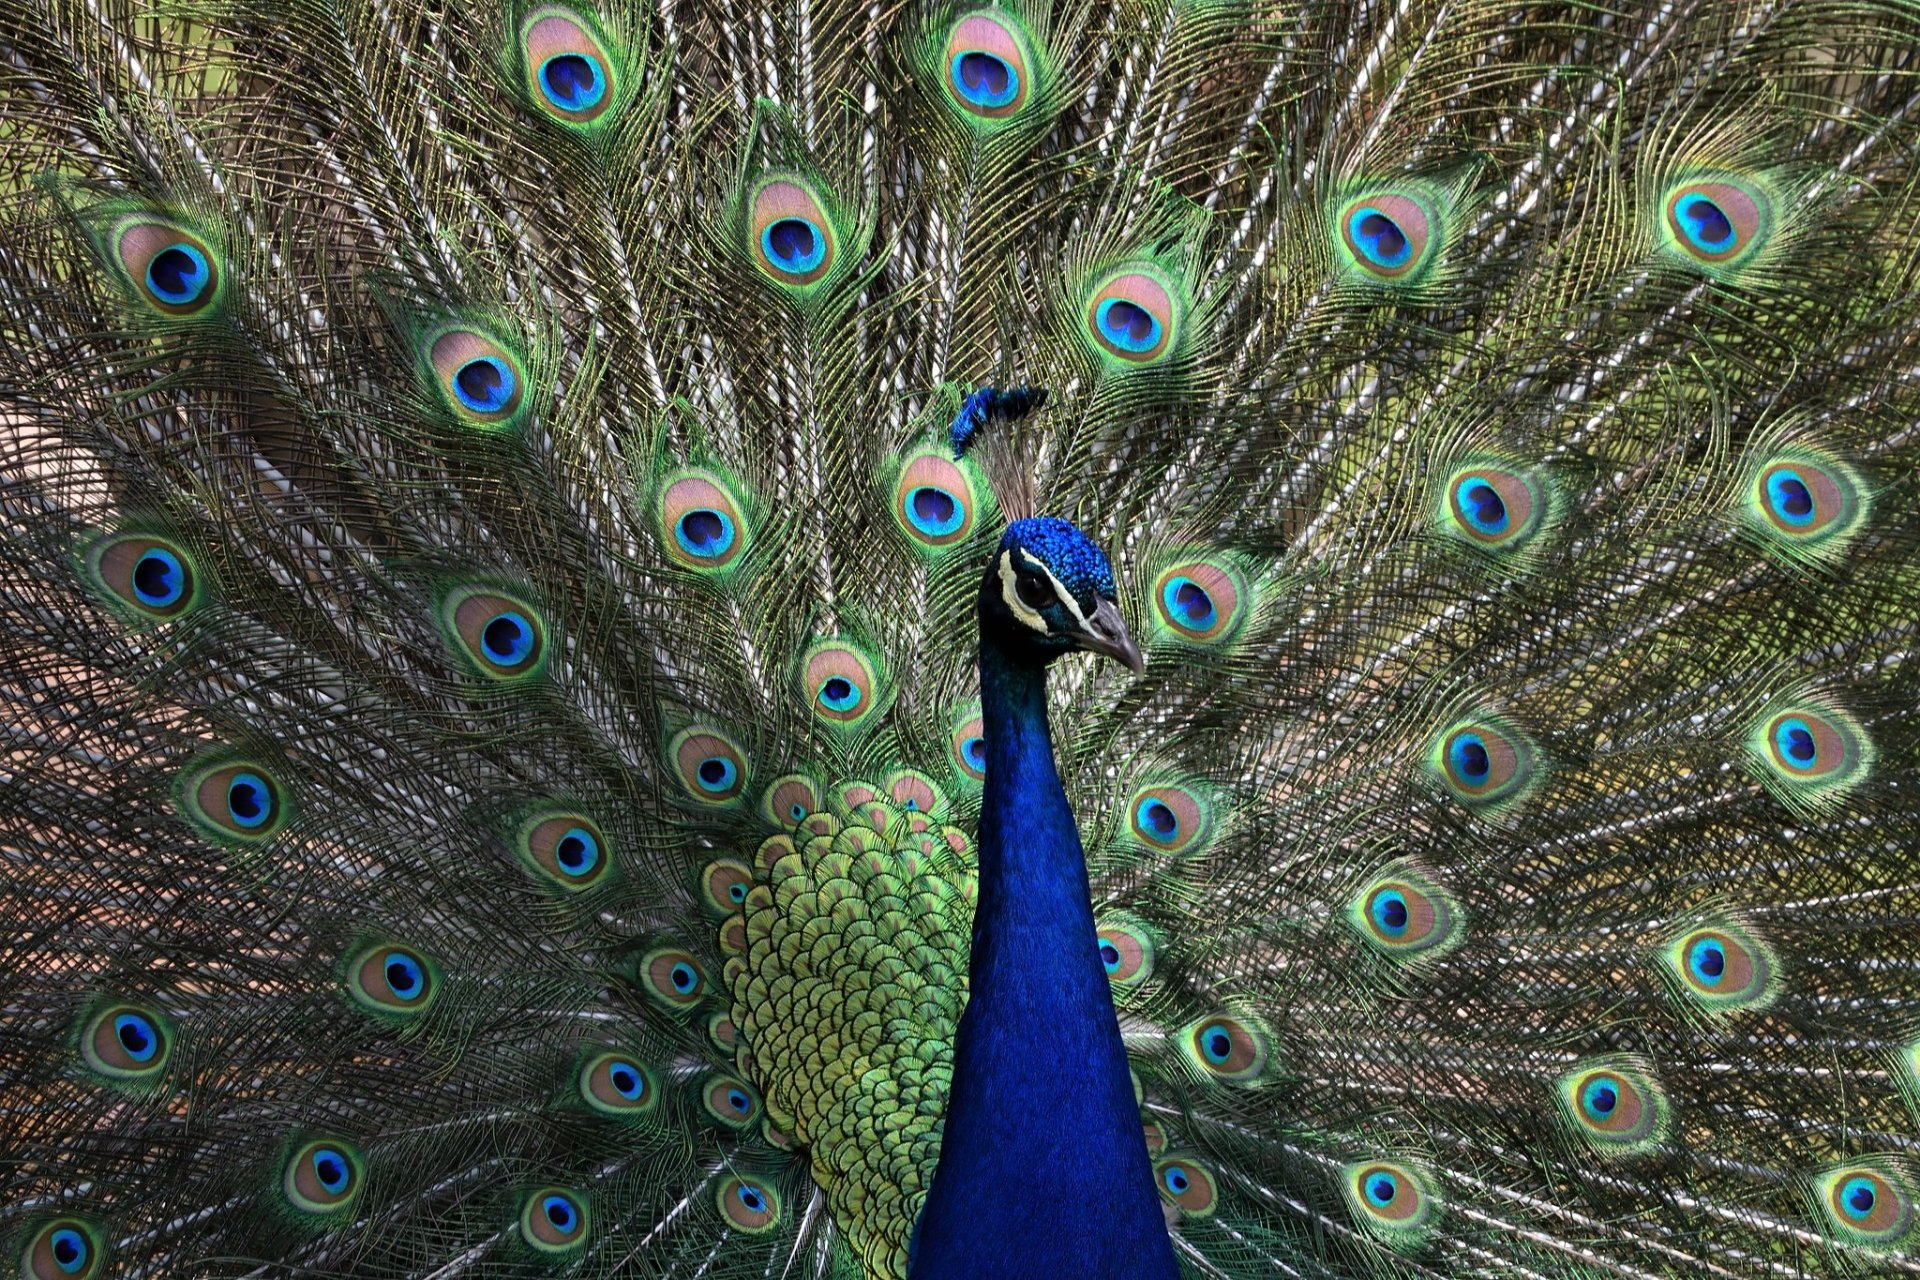 Peacock Login